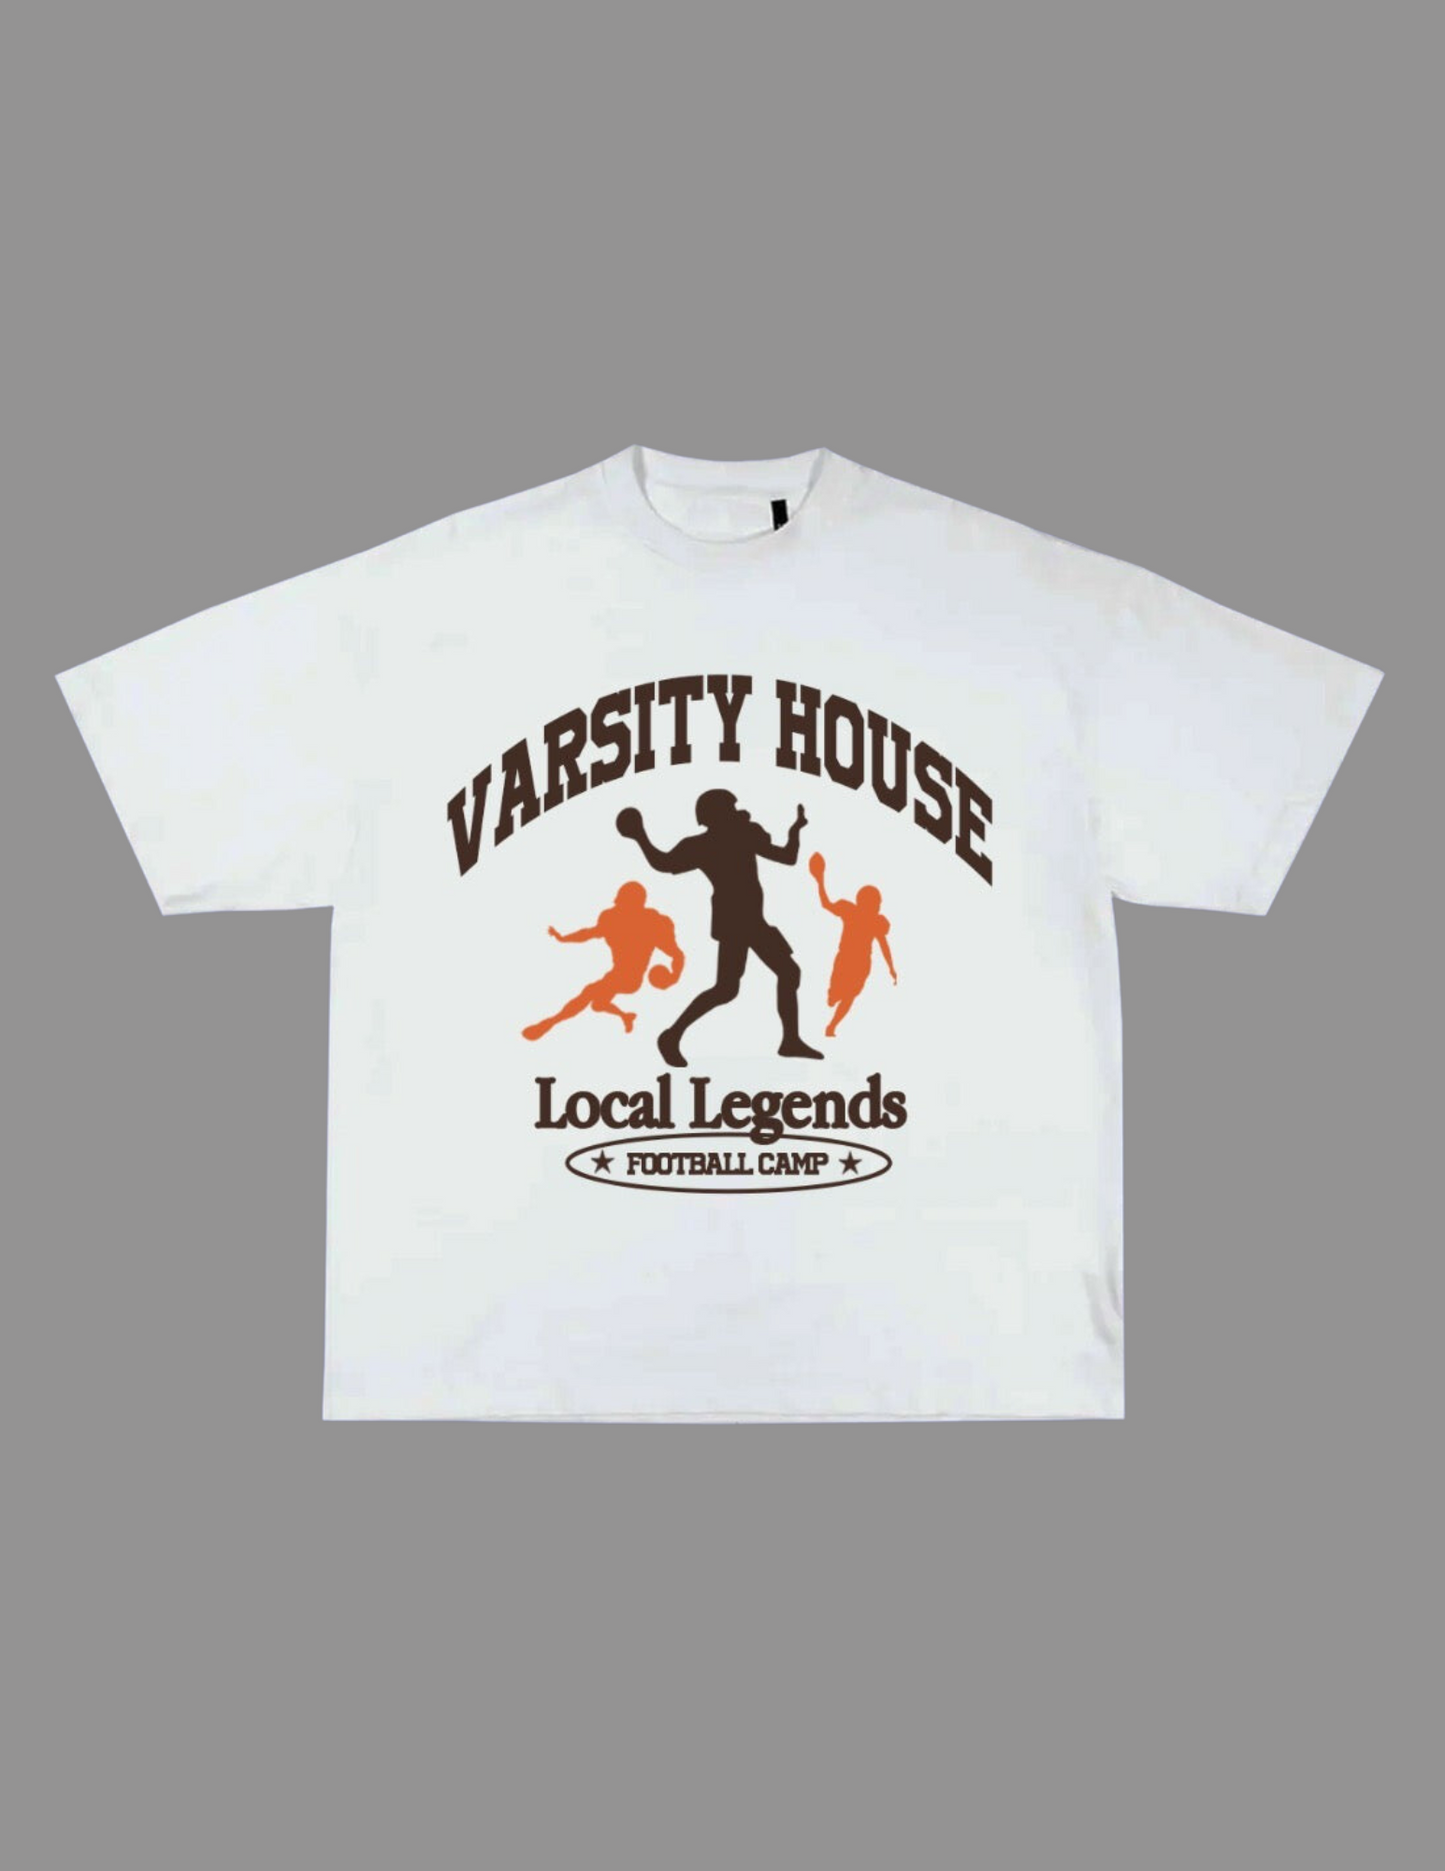 High School Legends, Shirts